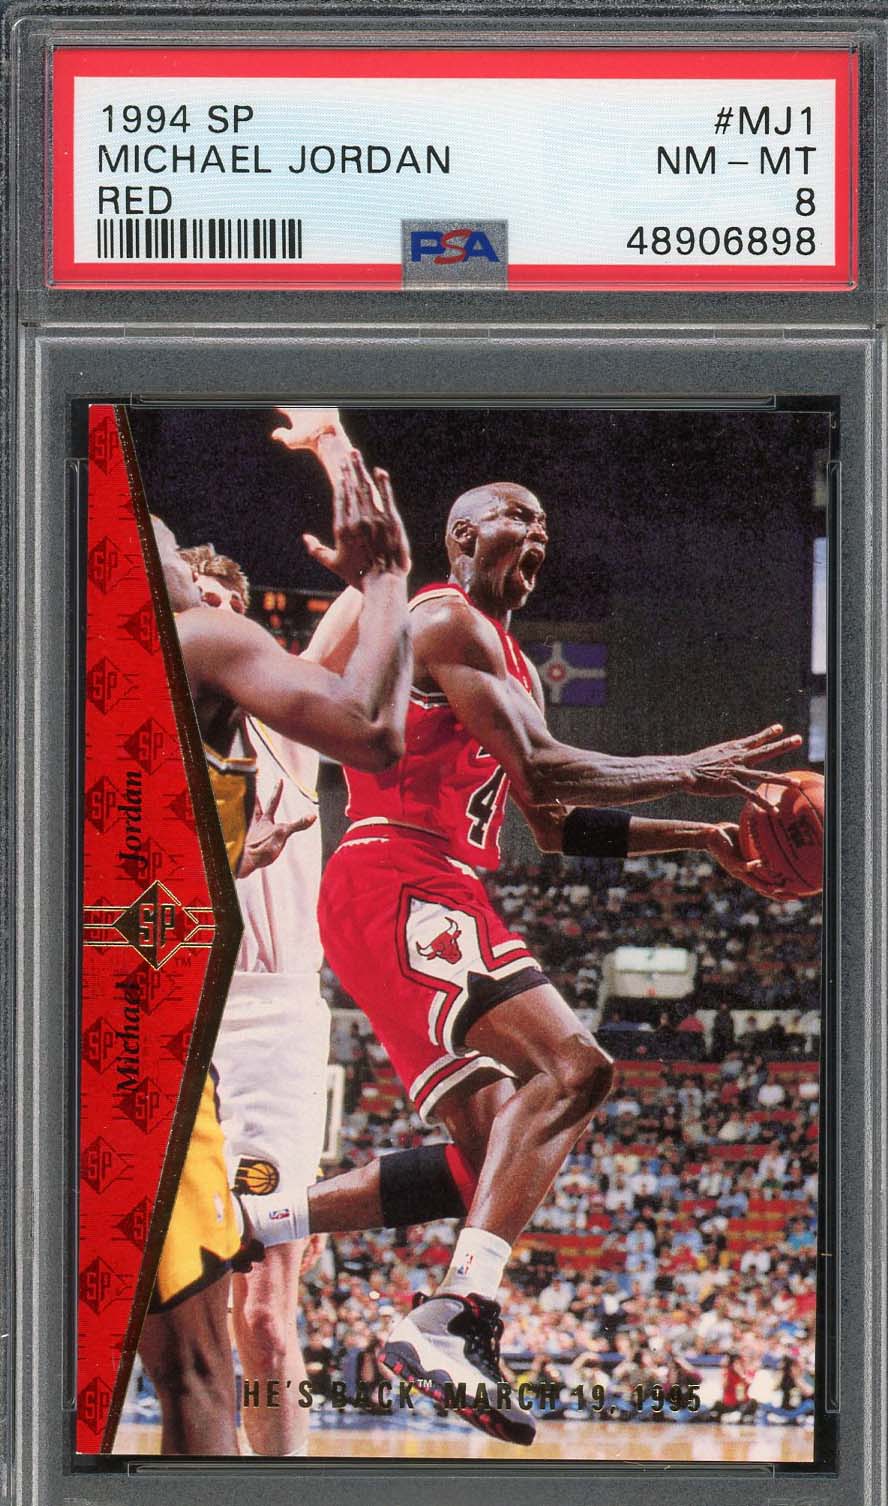 マイケル ジョーダン 1994 SP アッパー デッキ レッド バスケットボール カード #MJ1 グレード PSA 8